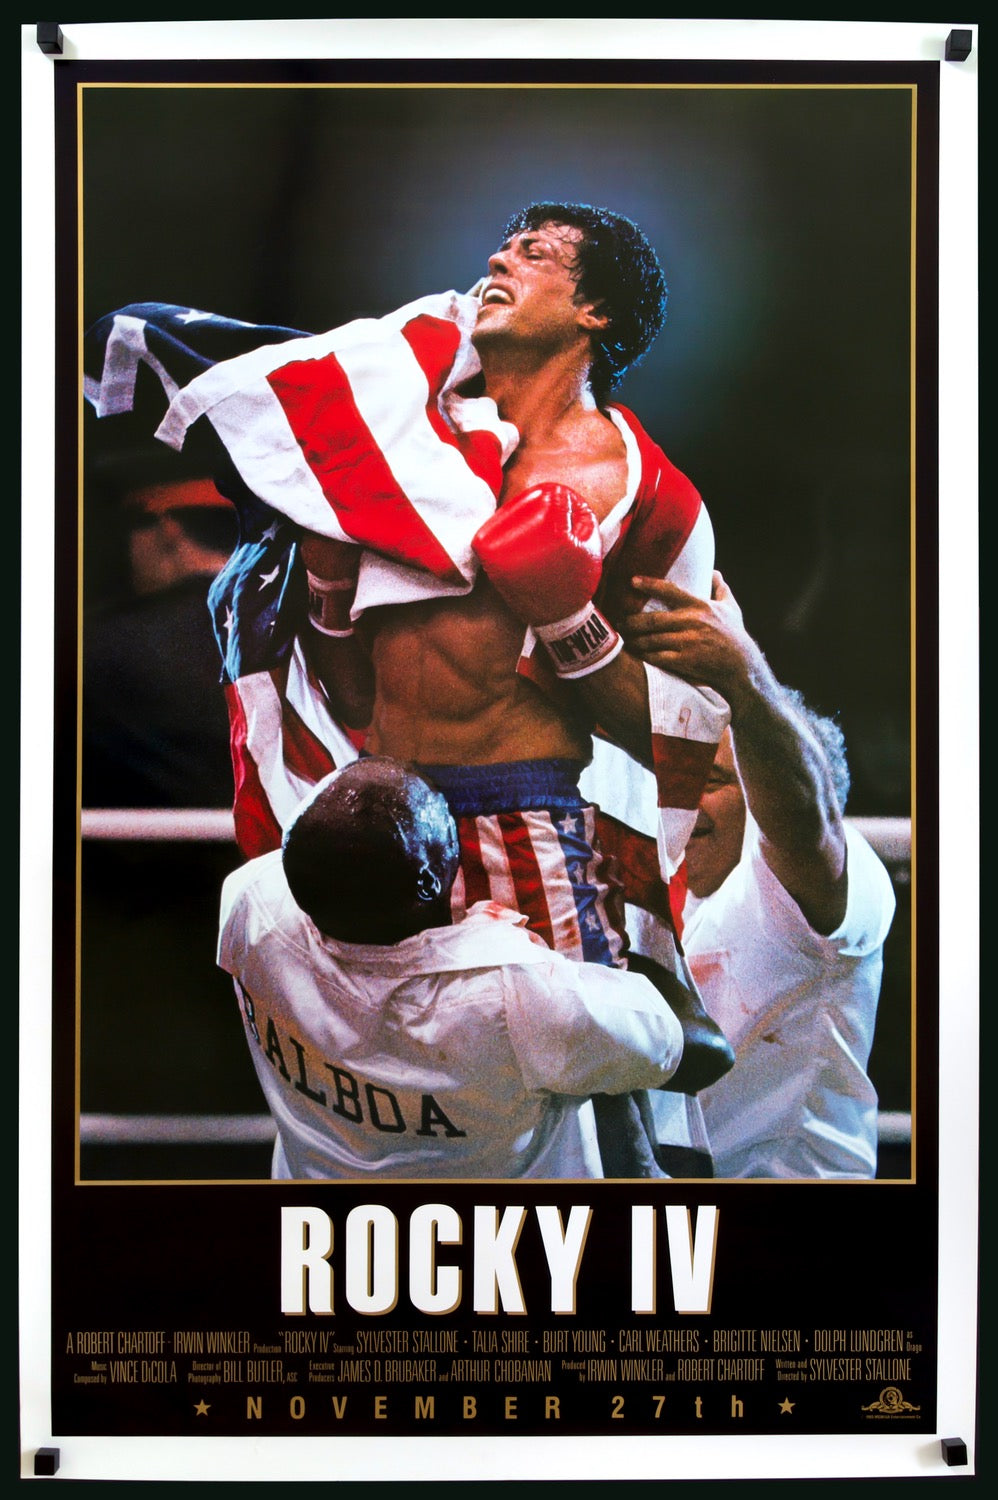 Rocky IV (1985) original movie poster for sale at Original Film Art